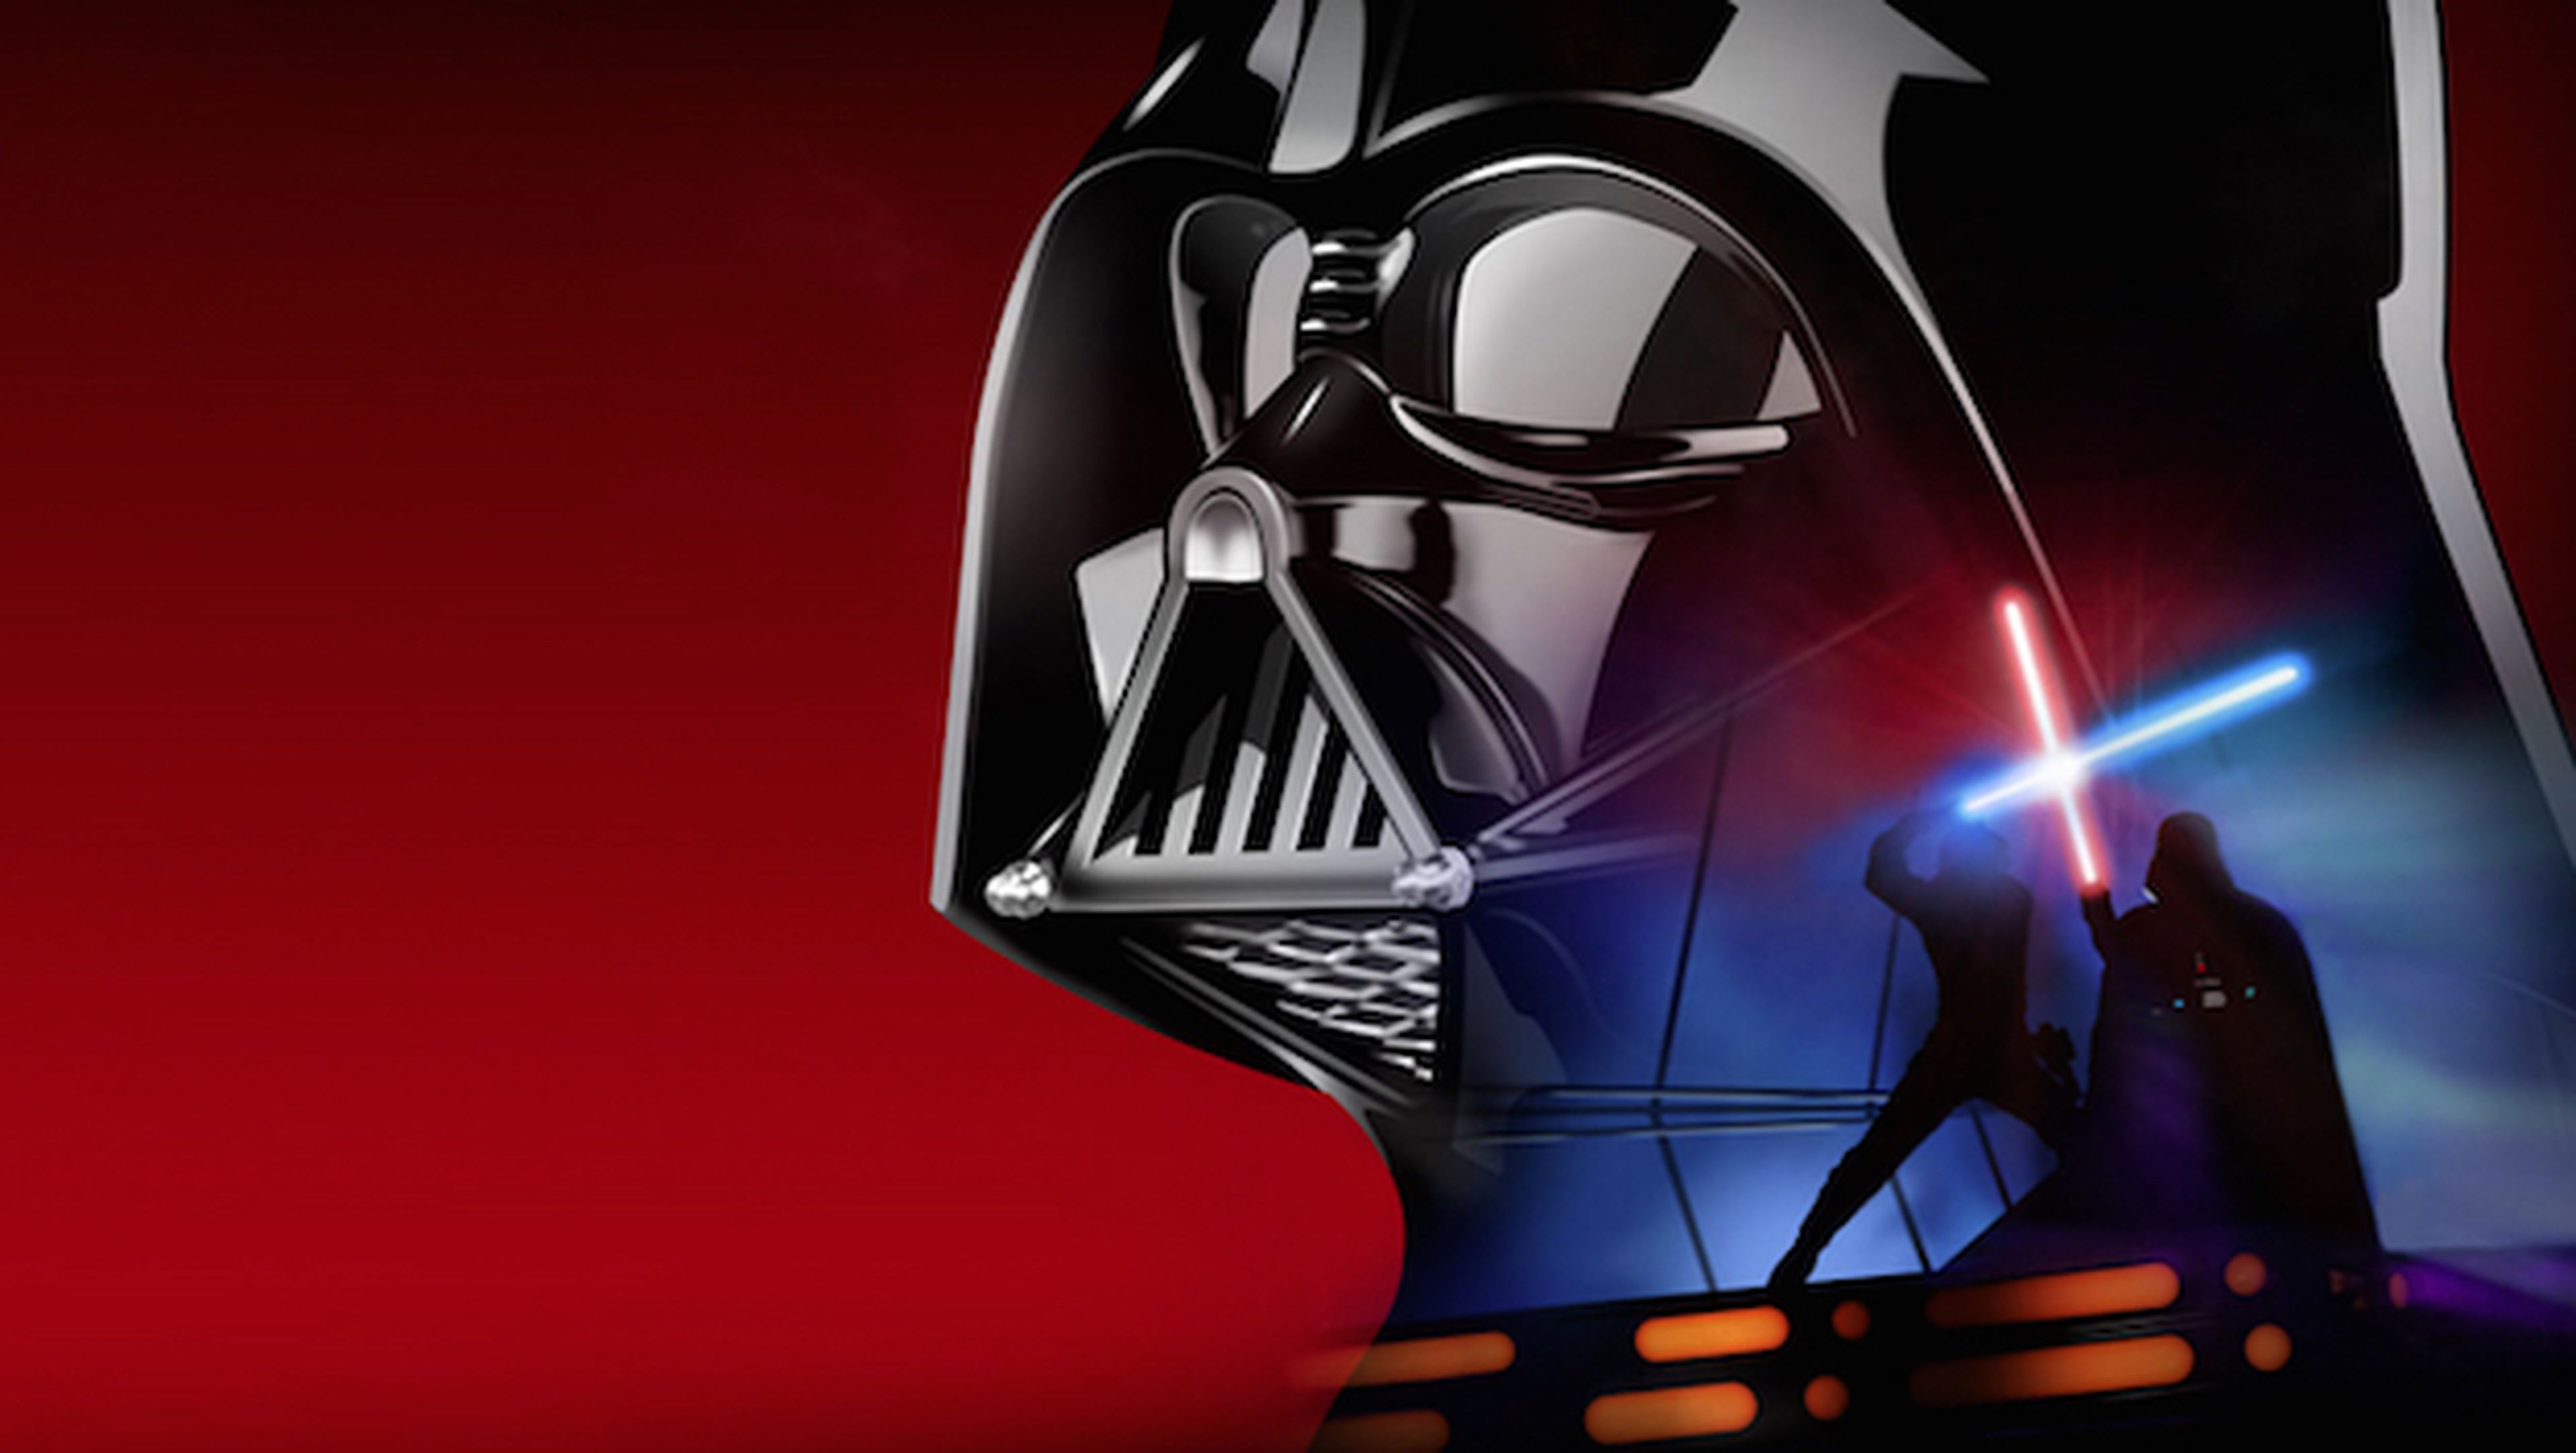 Descárgate la saga Star Wars en Digital HD el 10 de abril